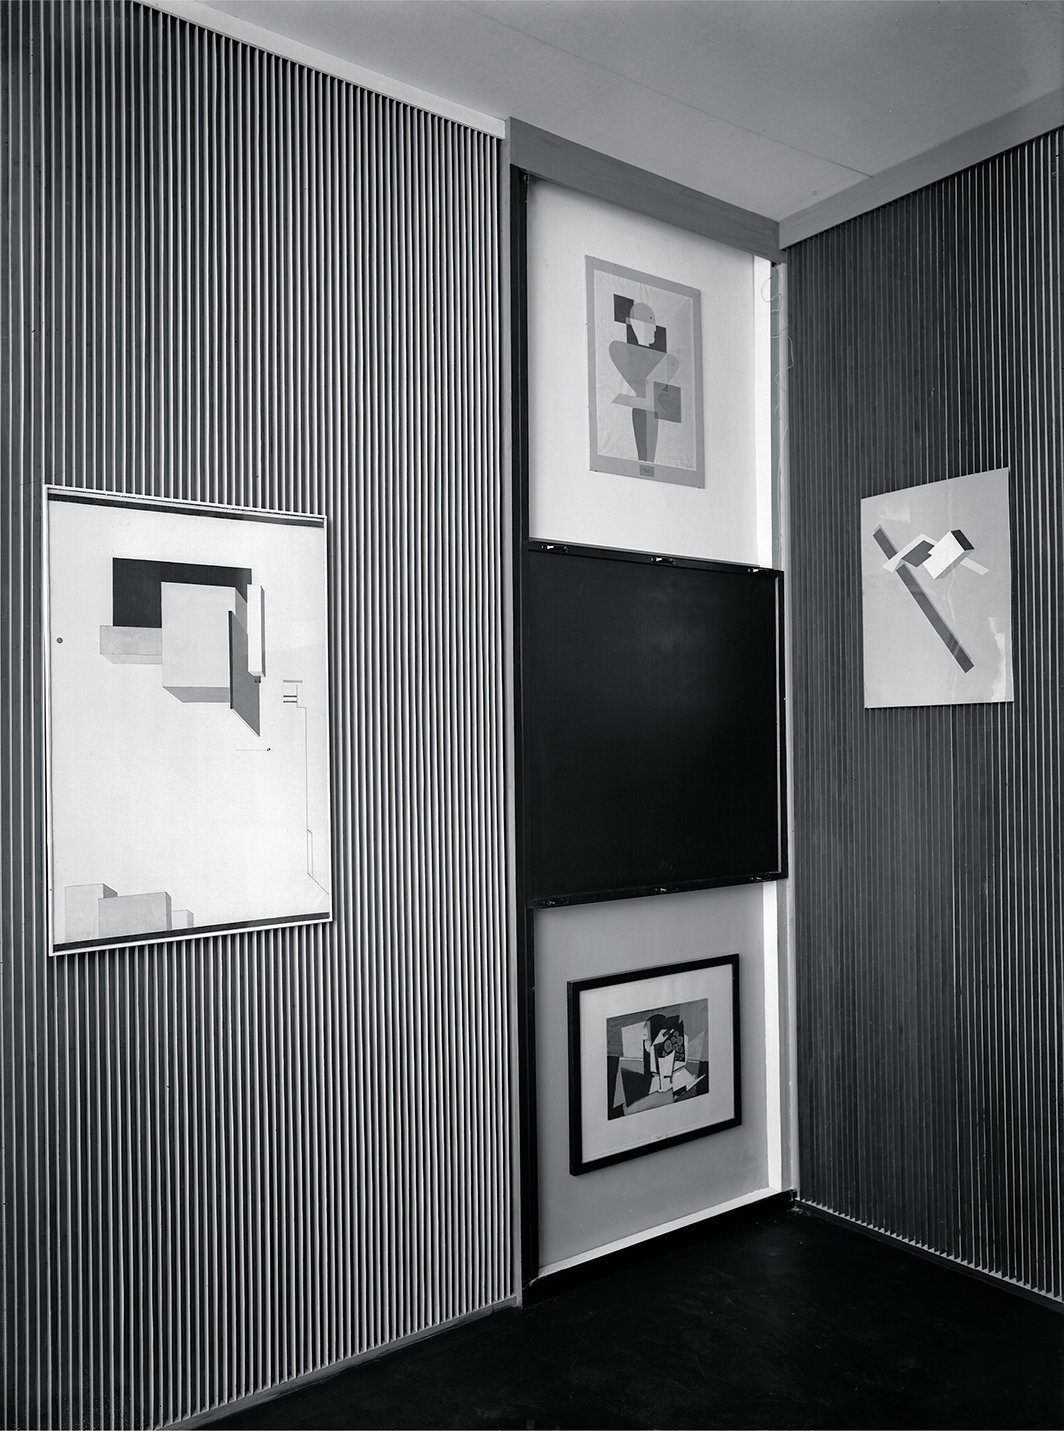 埃尔·利西茨基，《抽象柜》，1927-28，木材、金属、玻璃、布料。展览现场，汉诺威州立博物馆，德国，1928.